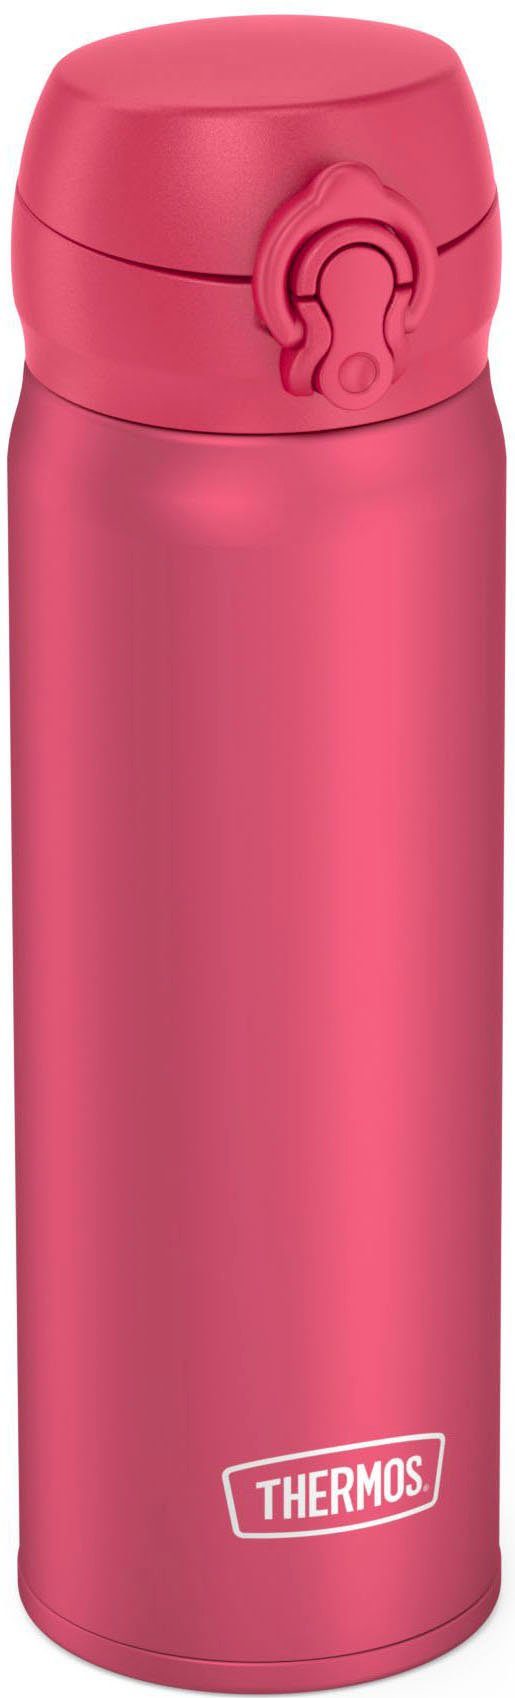 THERMOS doppelwandiger mat Edelstahl Isolierflasche pink BOTTLE, ULTRALIGHT deep